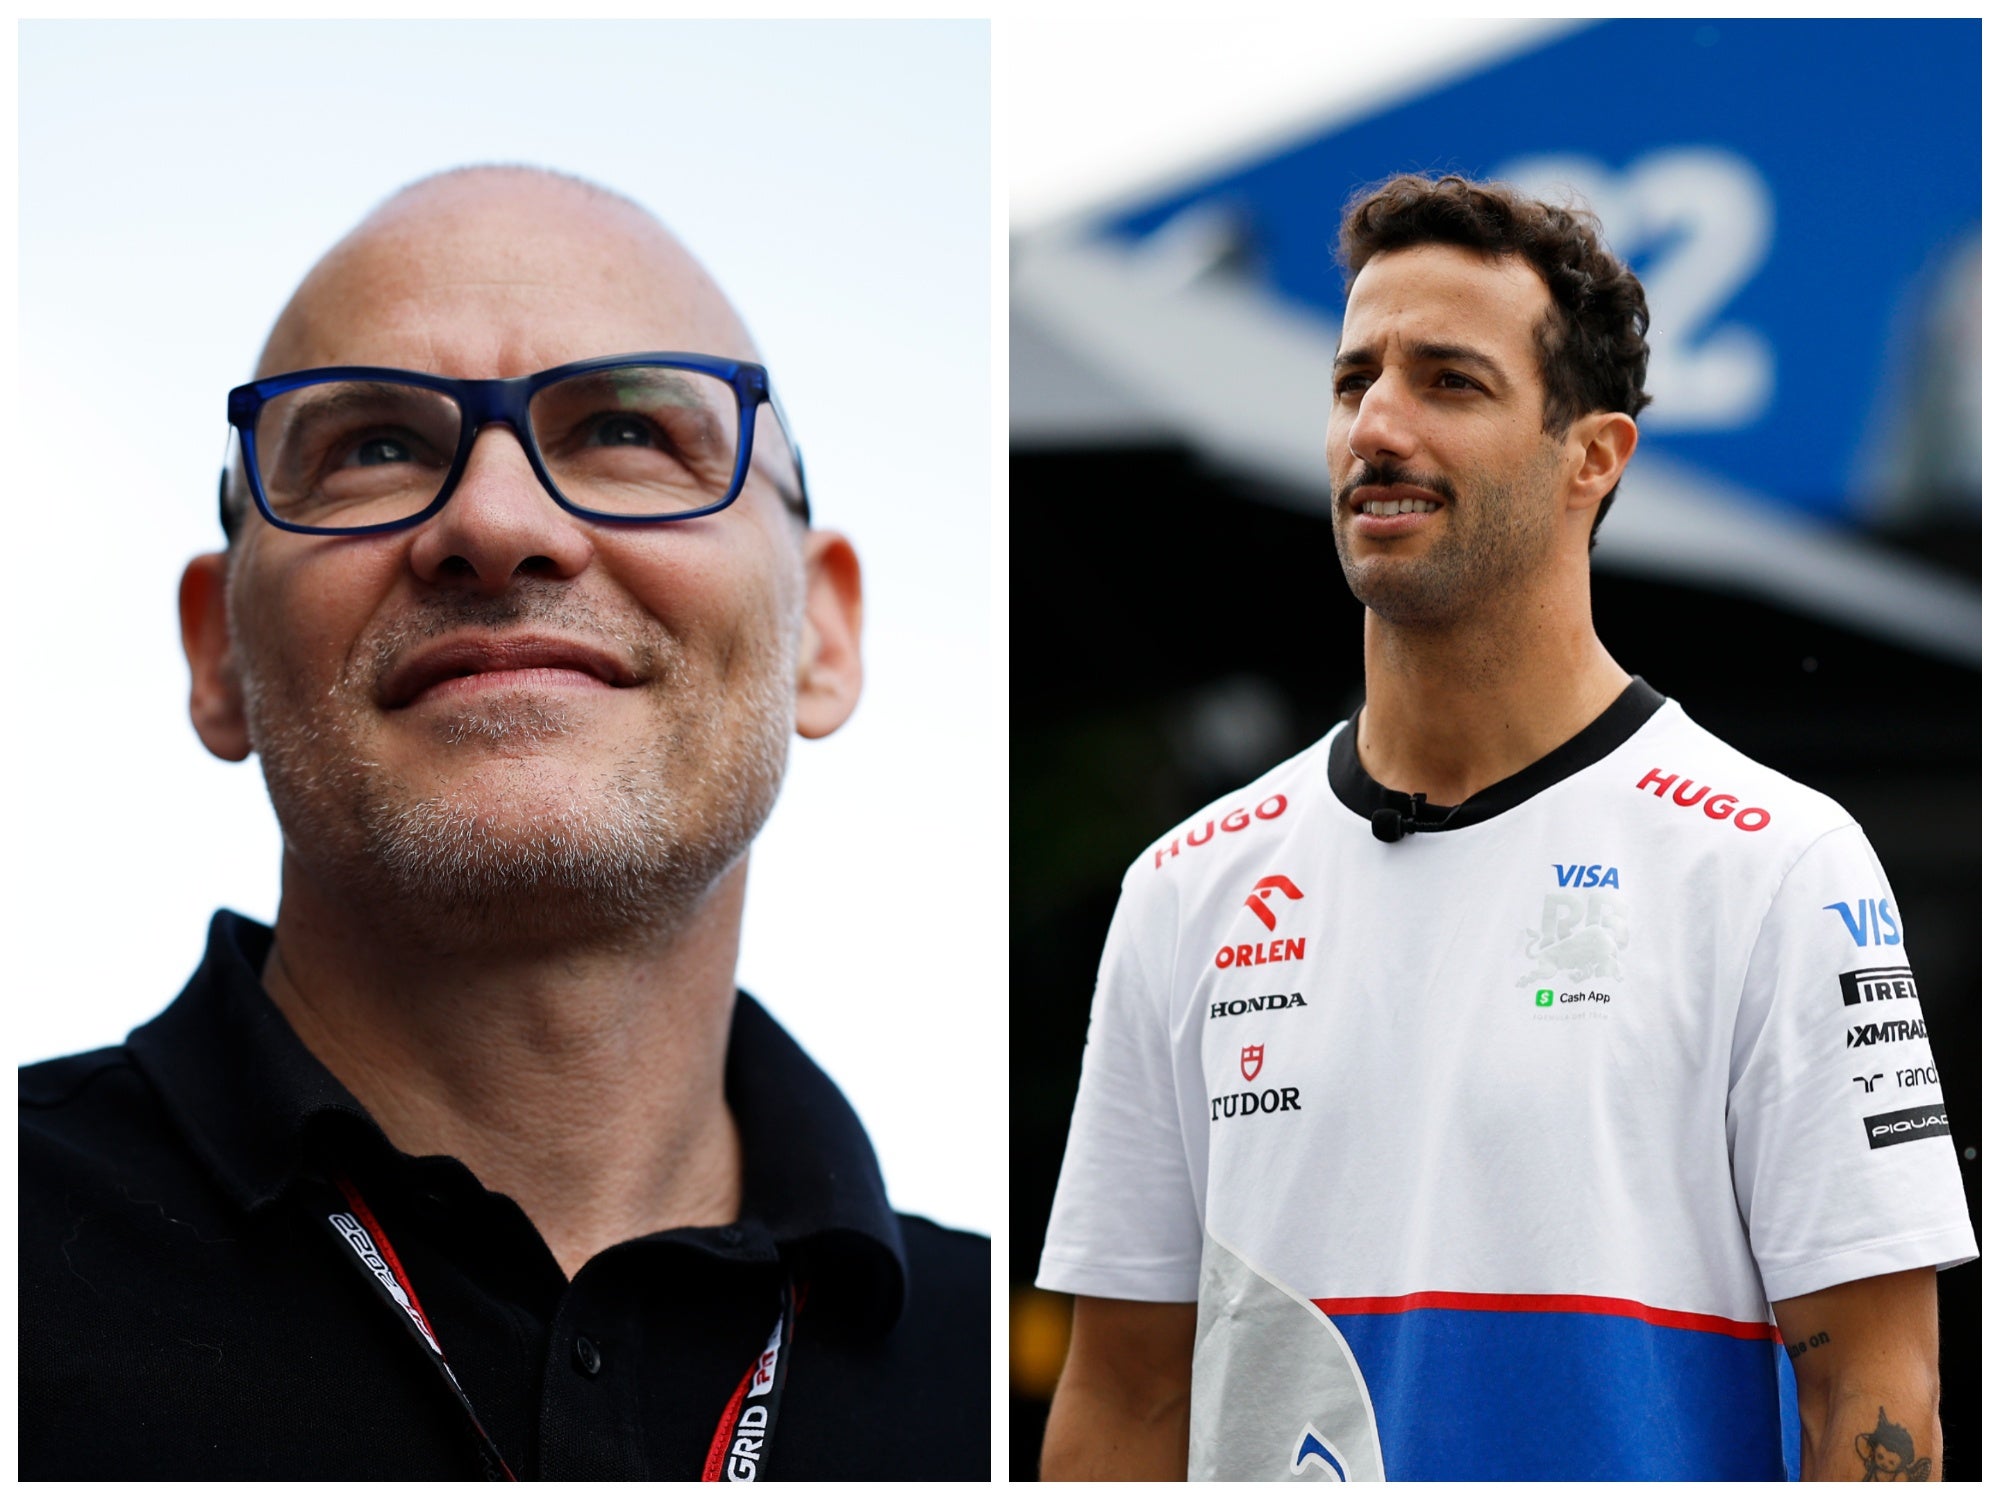 Jacques Villeneuve has criticised Daniel Ricciardo’s F1 career